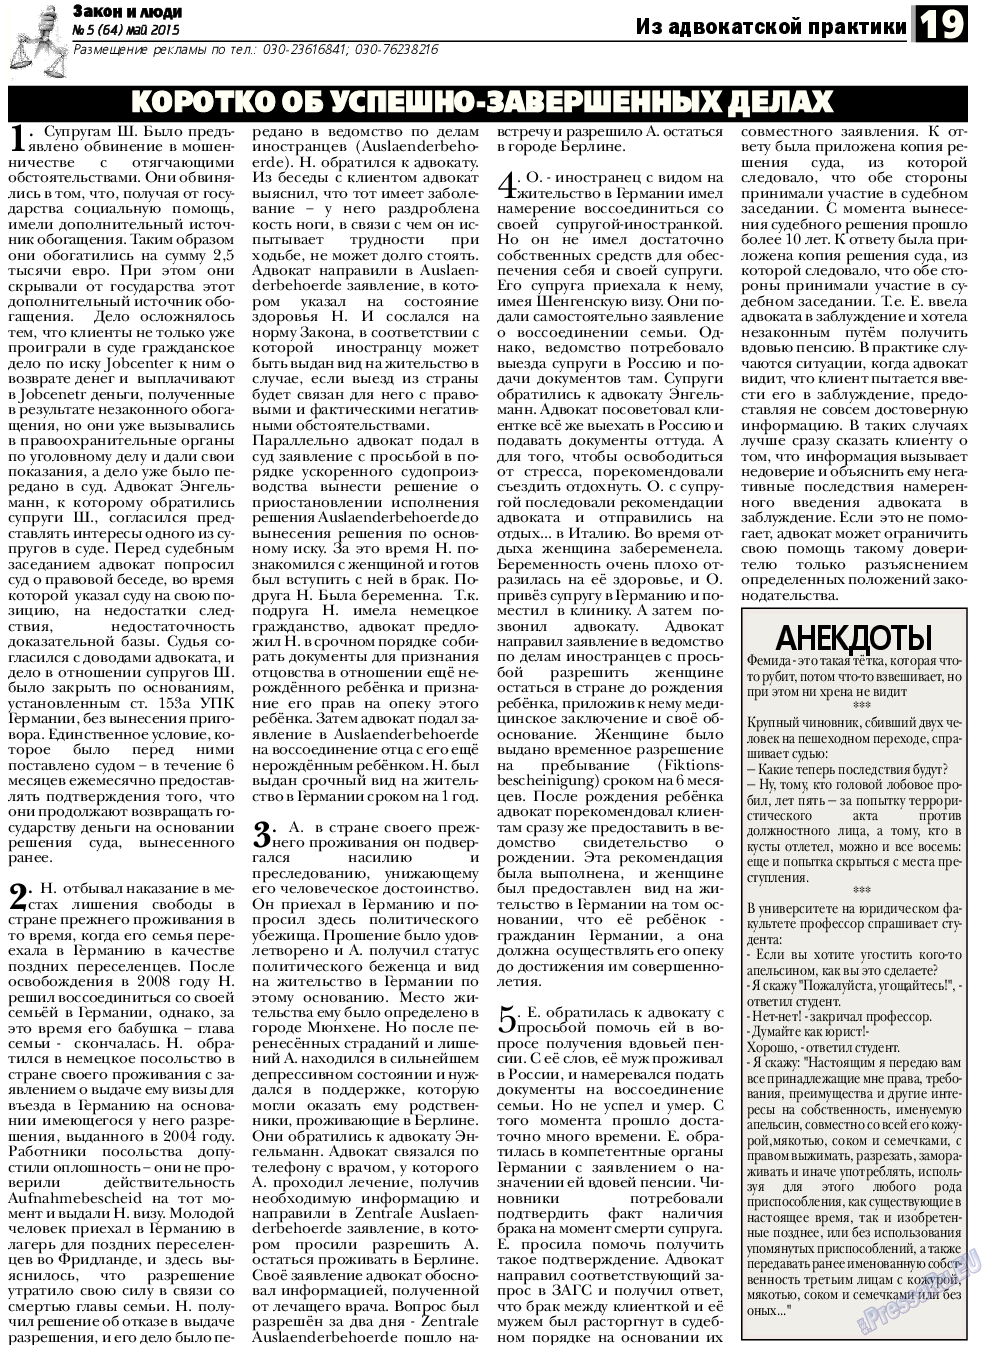 Закон и люди (газета). 2015 год, номер 5, стр. 19